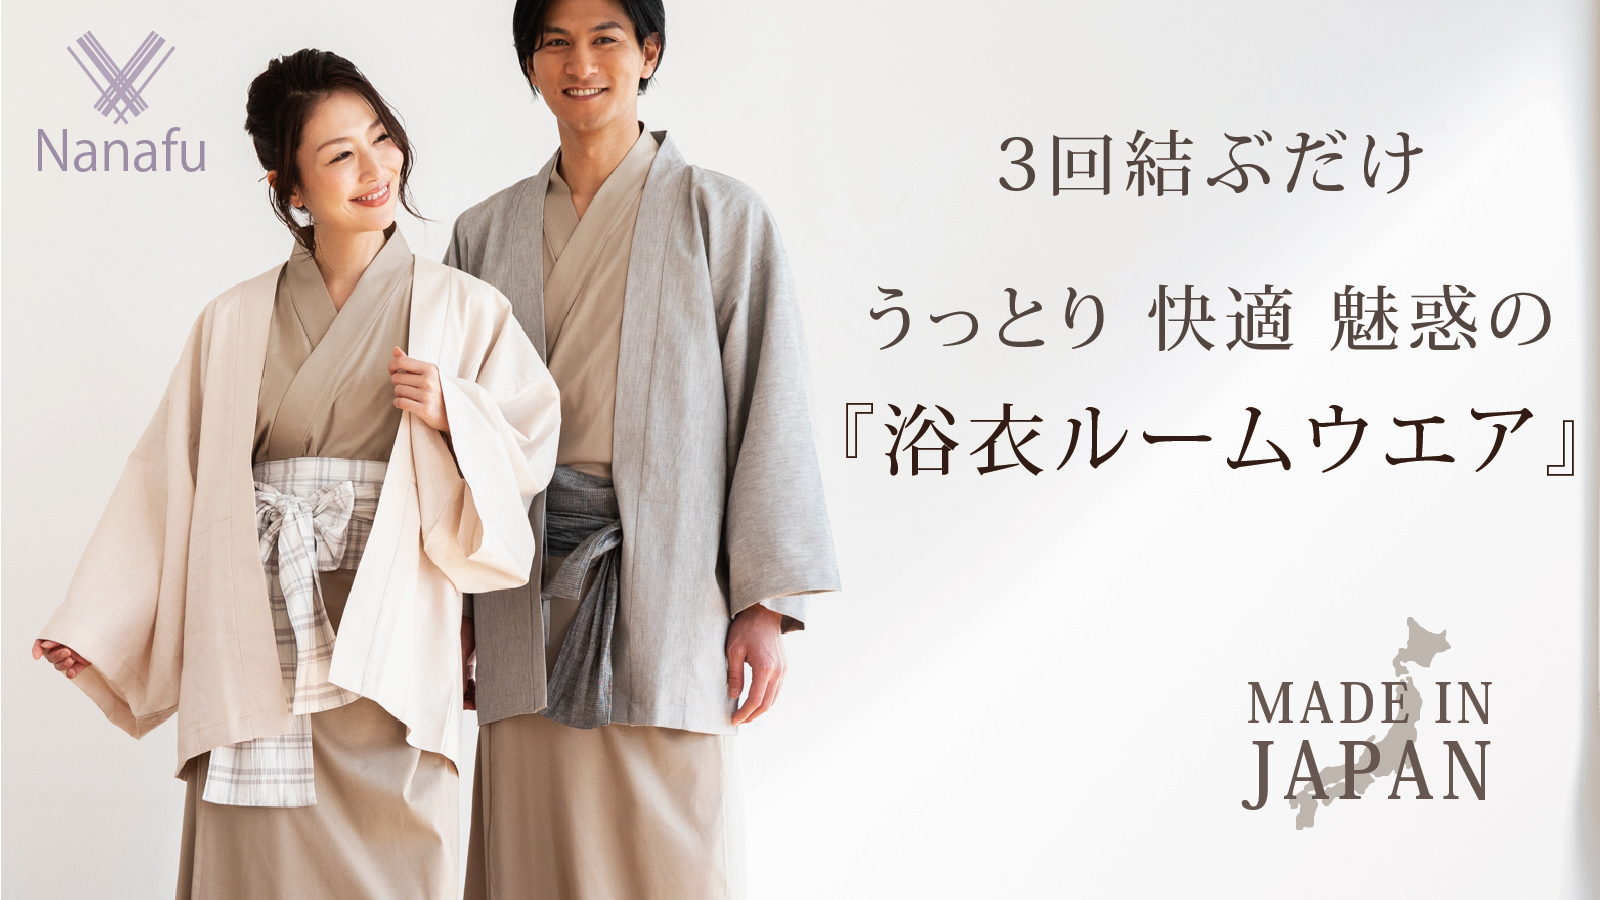 開始20分で100万円】'' 浴衣ルームウェア ''ブランド「Nanafu」新作モデルをMakuakeにて販売スタート、デイリーランキング１位を獲得。｜合同会社Brand-new  Stepのプレスリリース